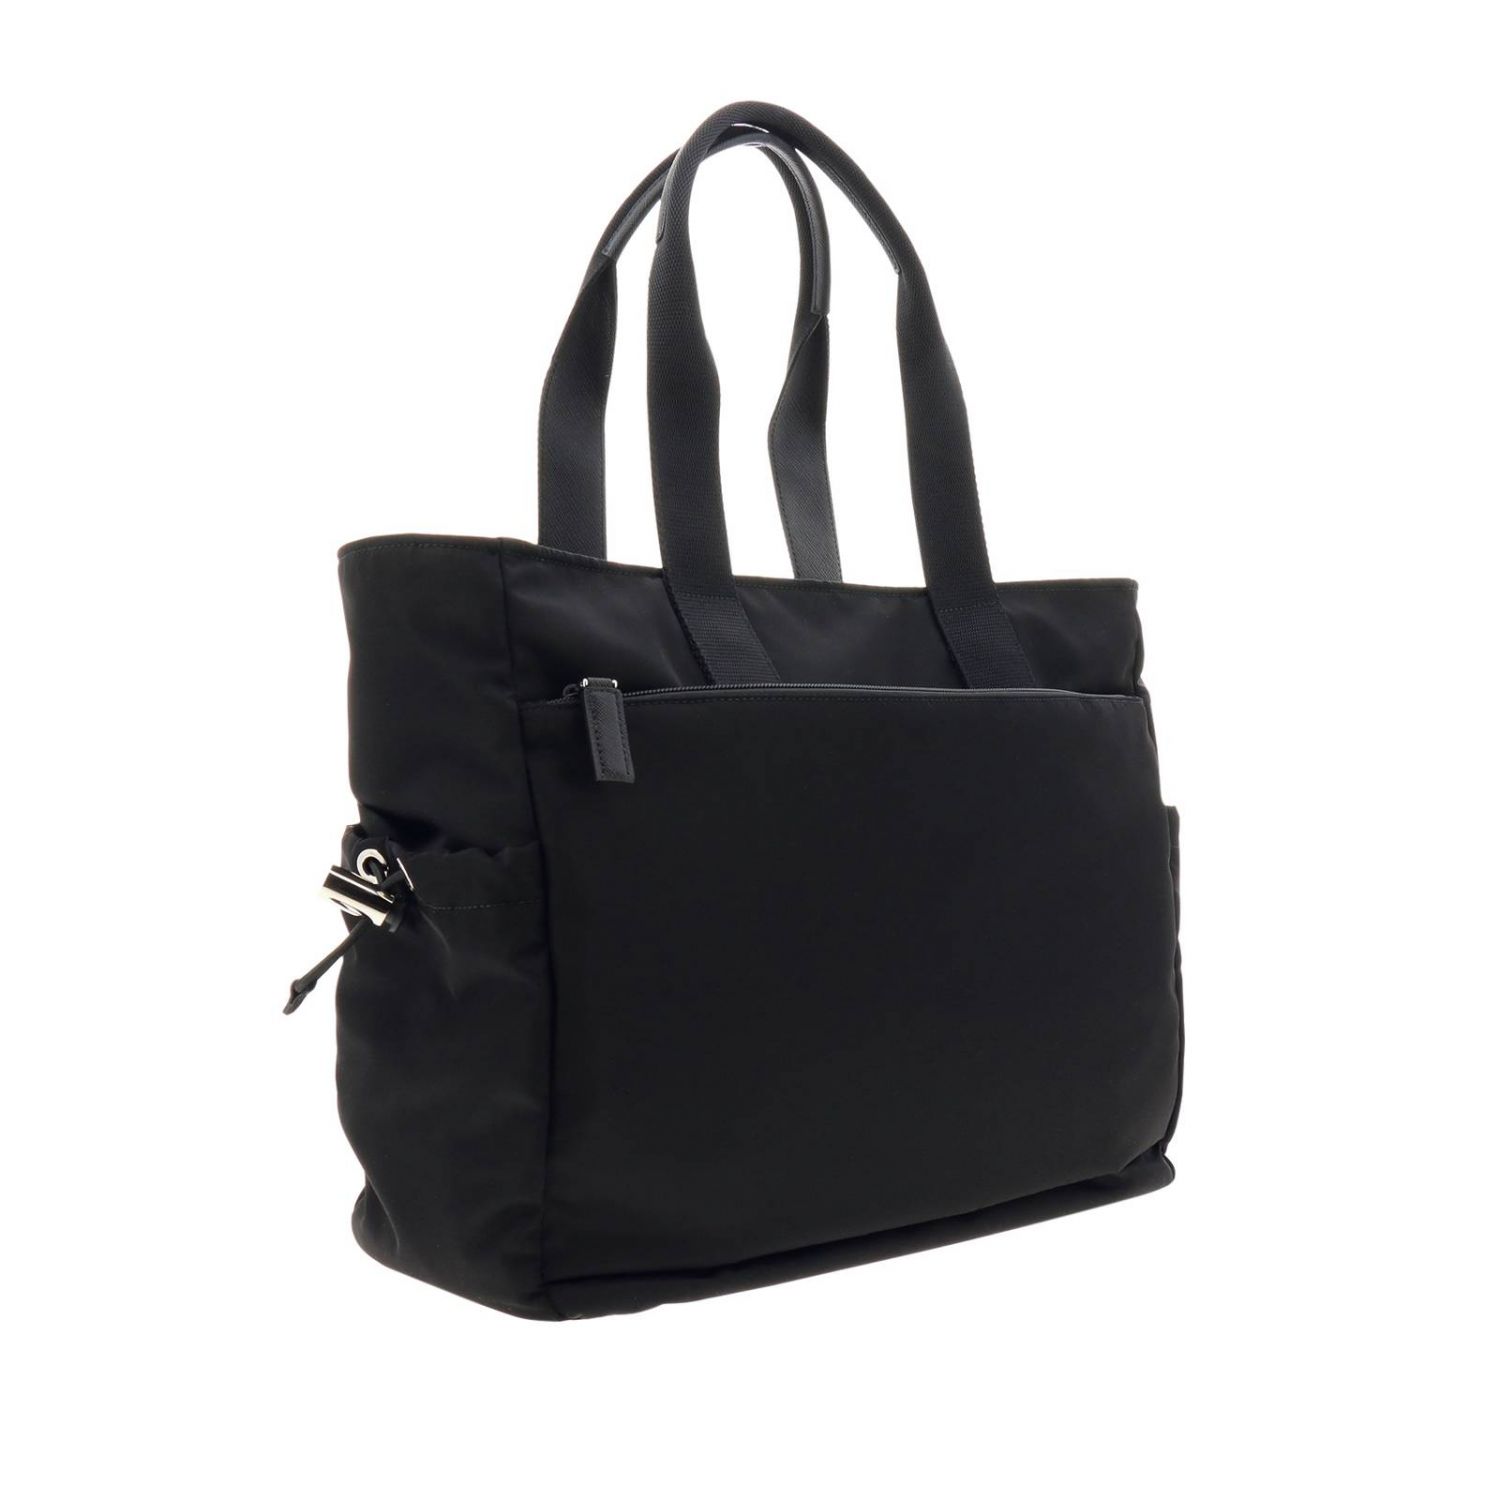 Bags men Prada | Bags Prada Men Black | Bags Prada 2VG042OOO 973 Giglio EN